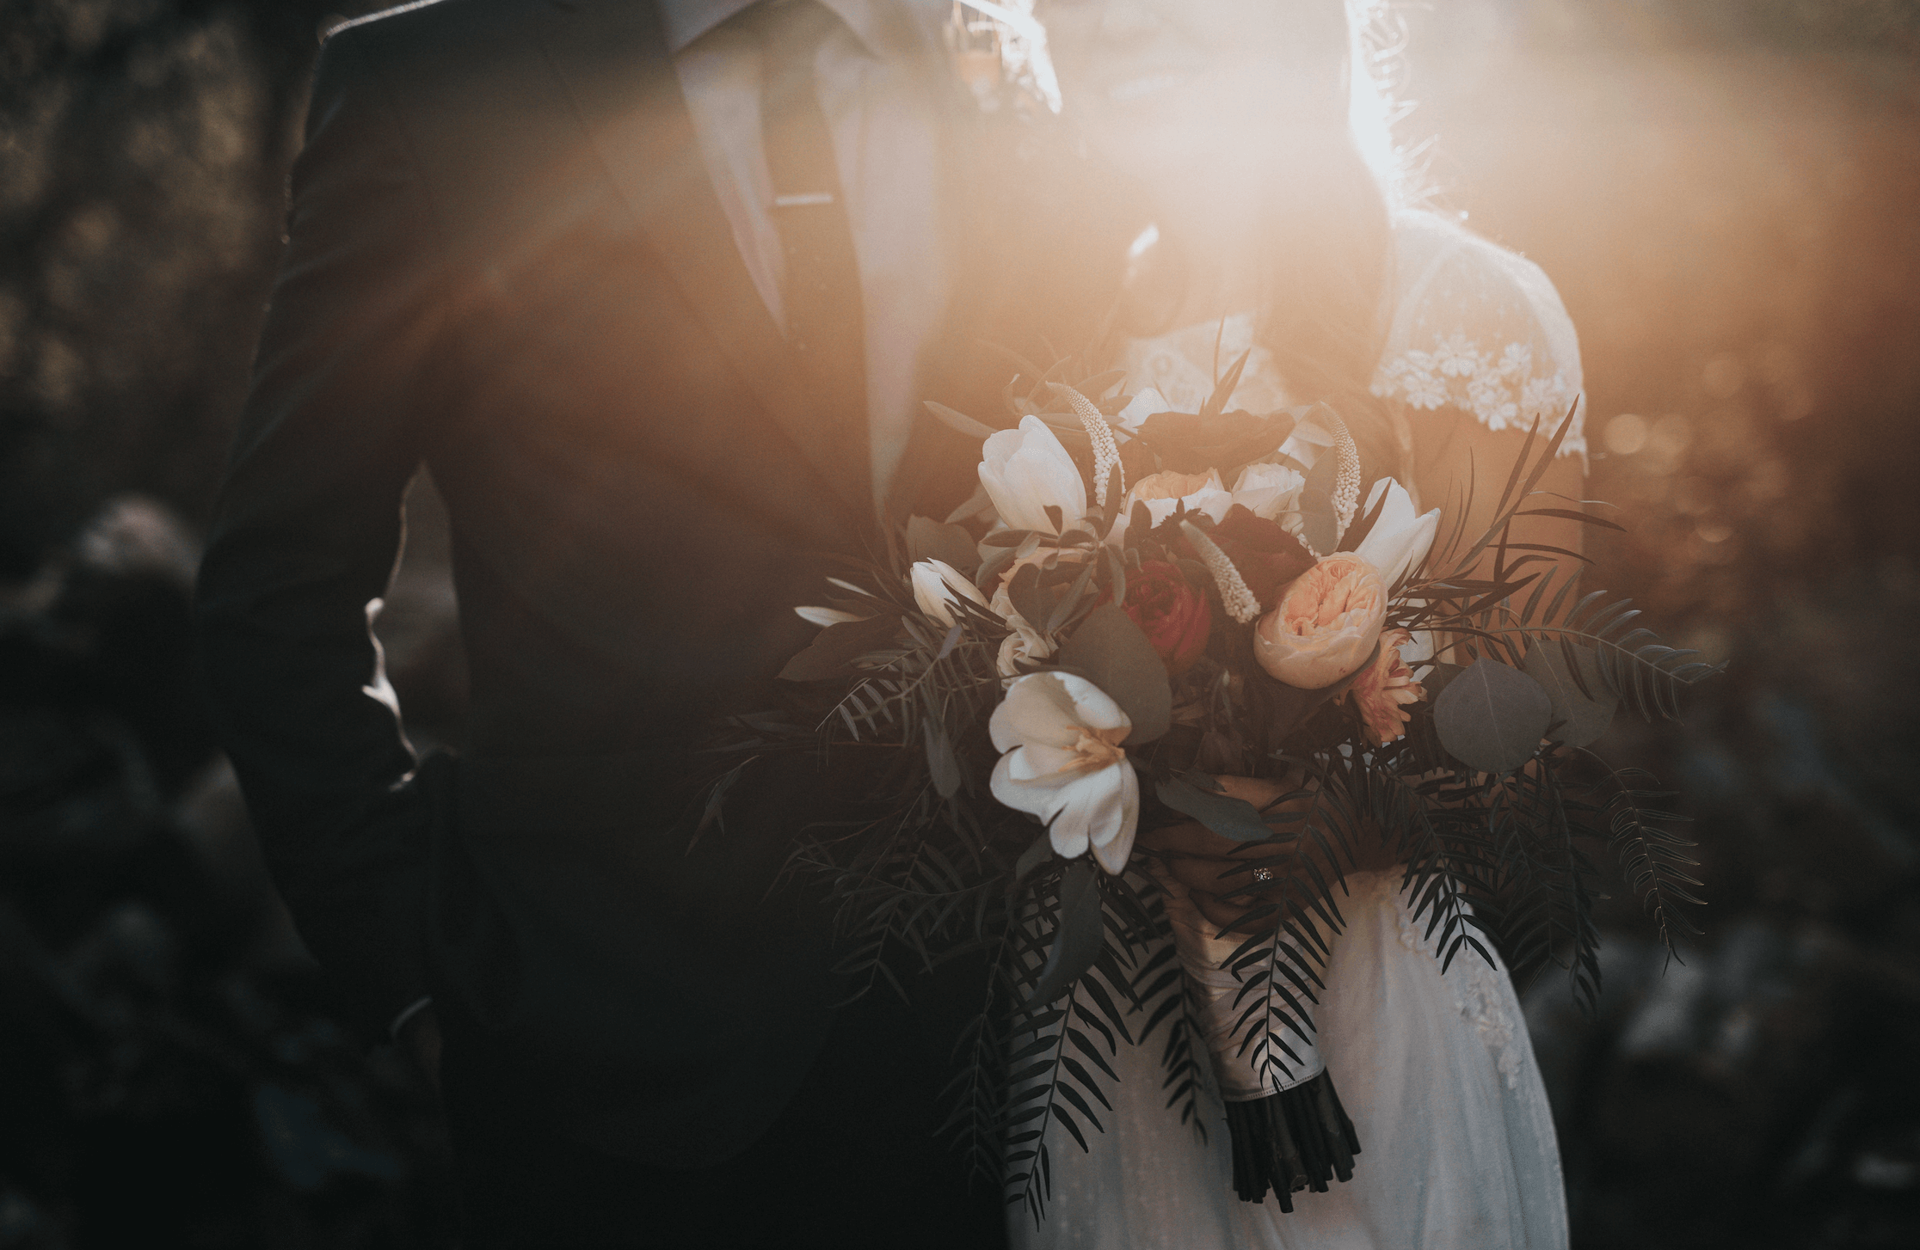 Brautpaar mit Blumenstrauss